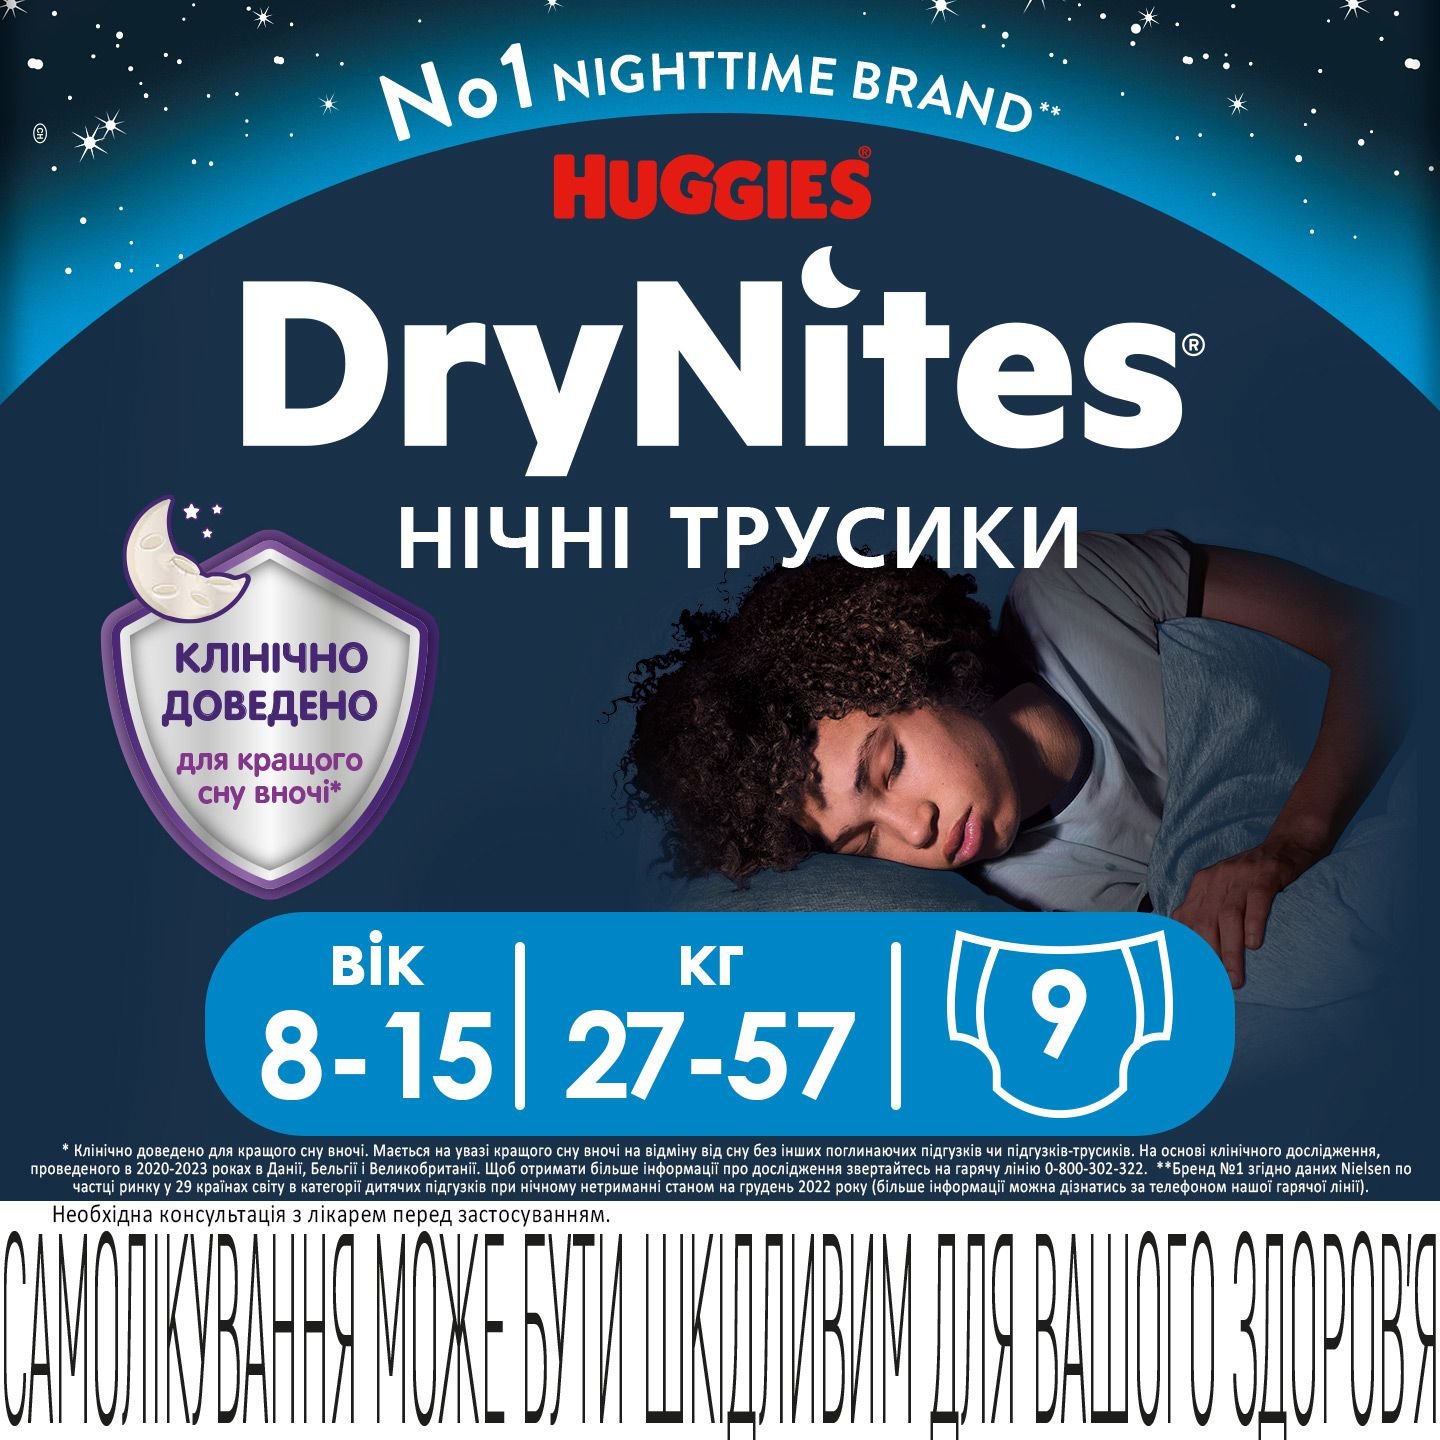 Подгузники-трусики для мальчиков Huggies DryNites (27-57 кг), 9 шт. - фото 2